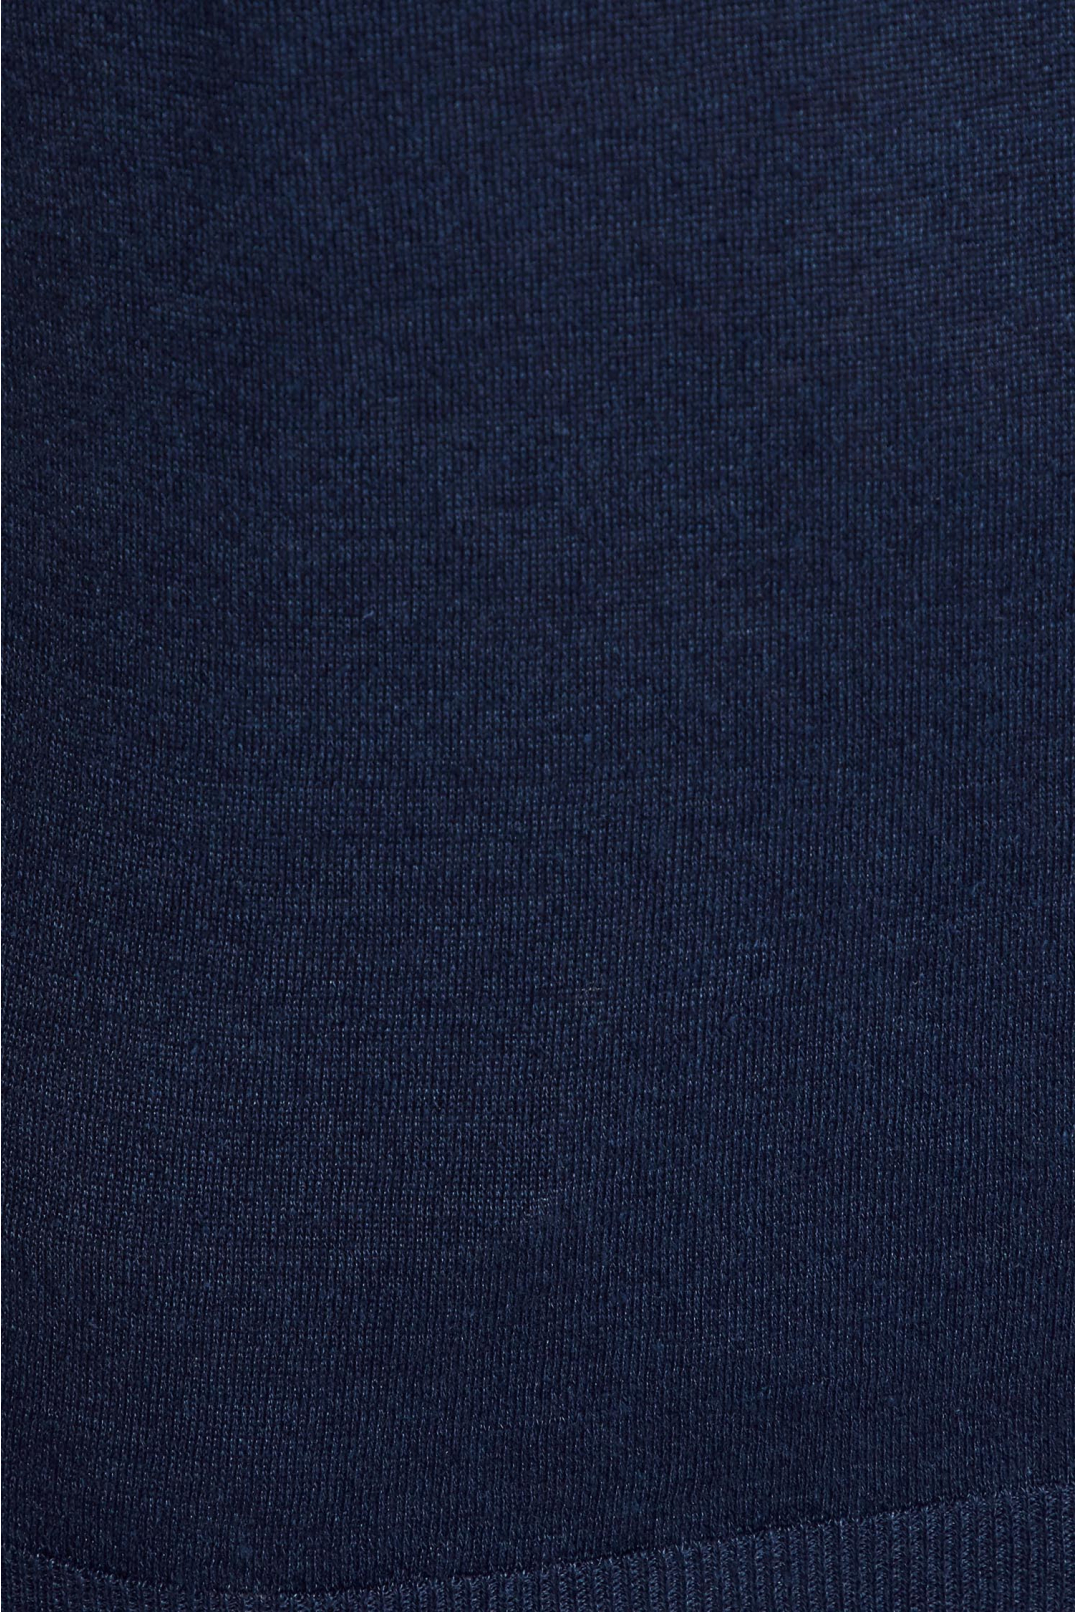 Мужской темно-синий льняной джемпер с коротким рукавом - 4